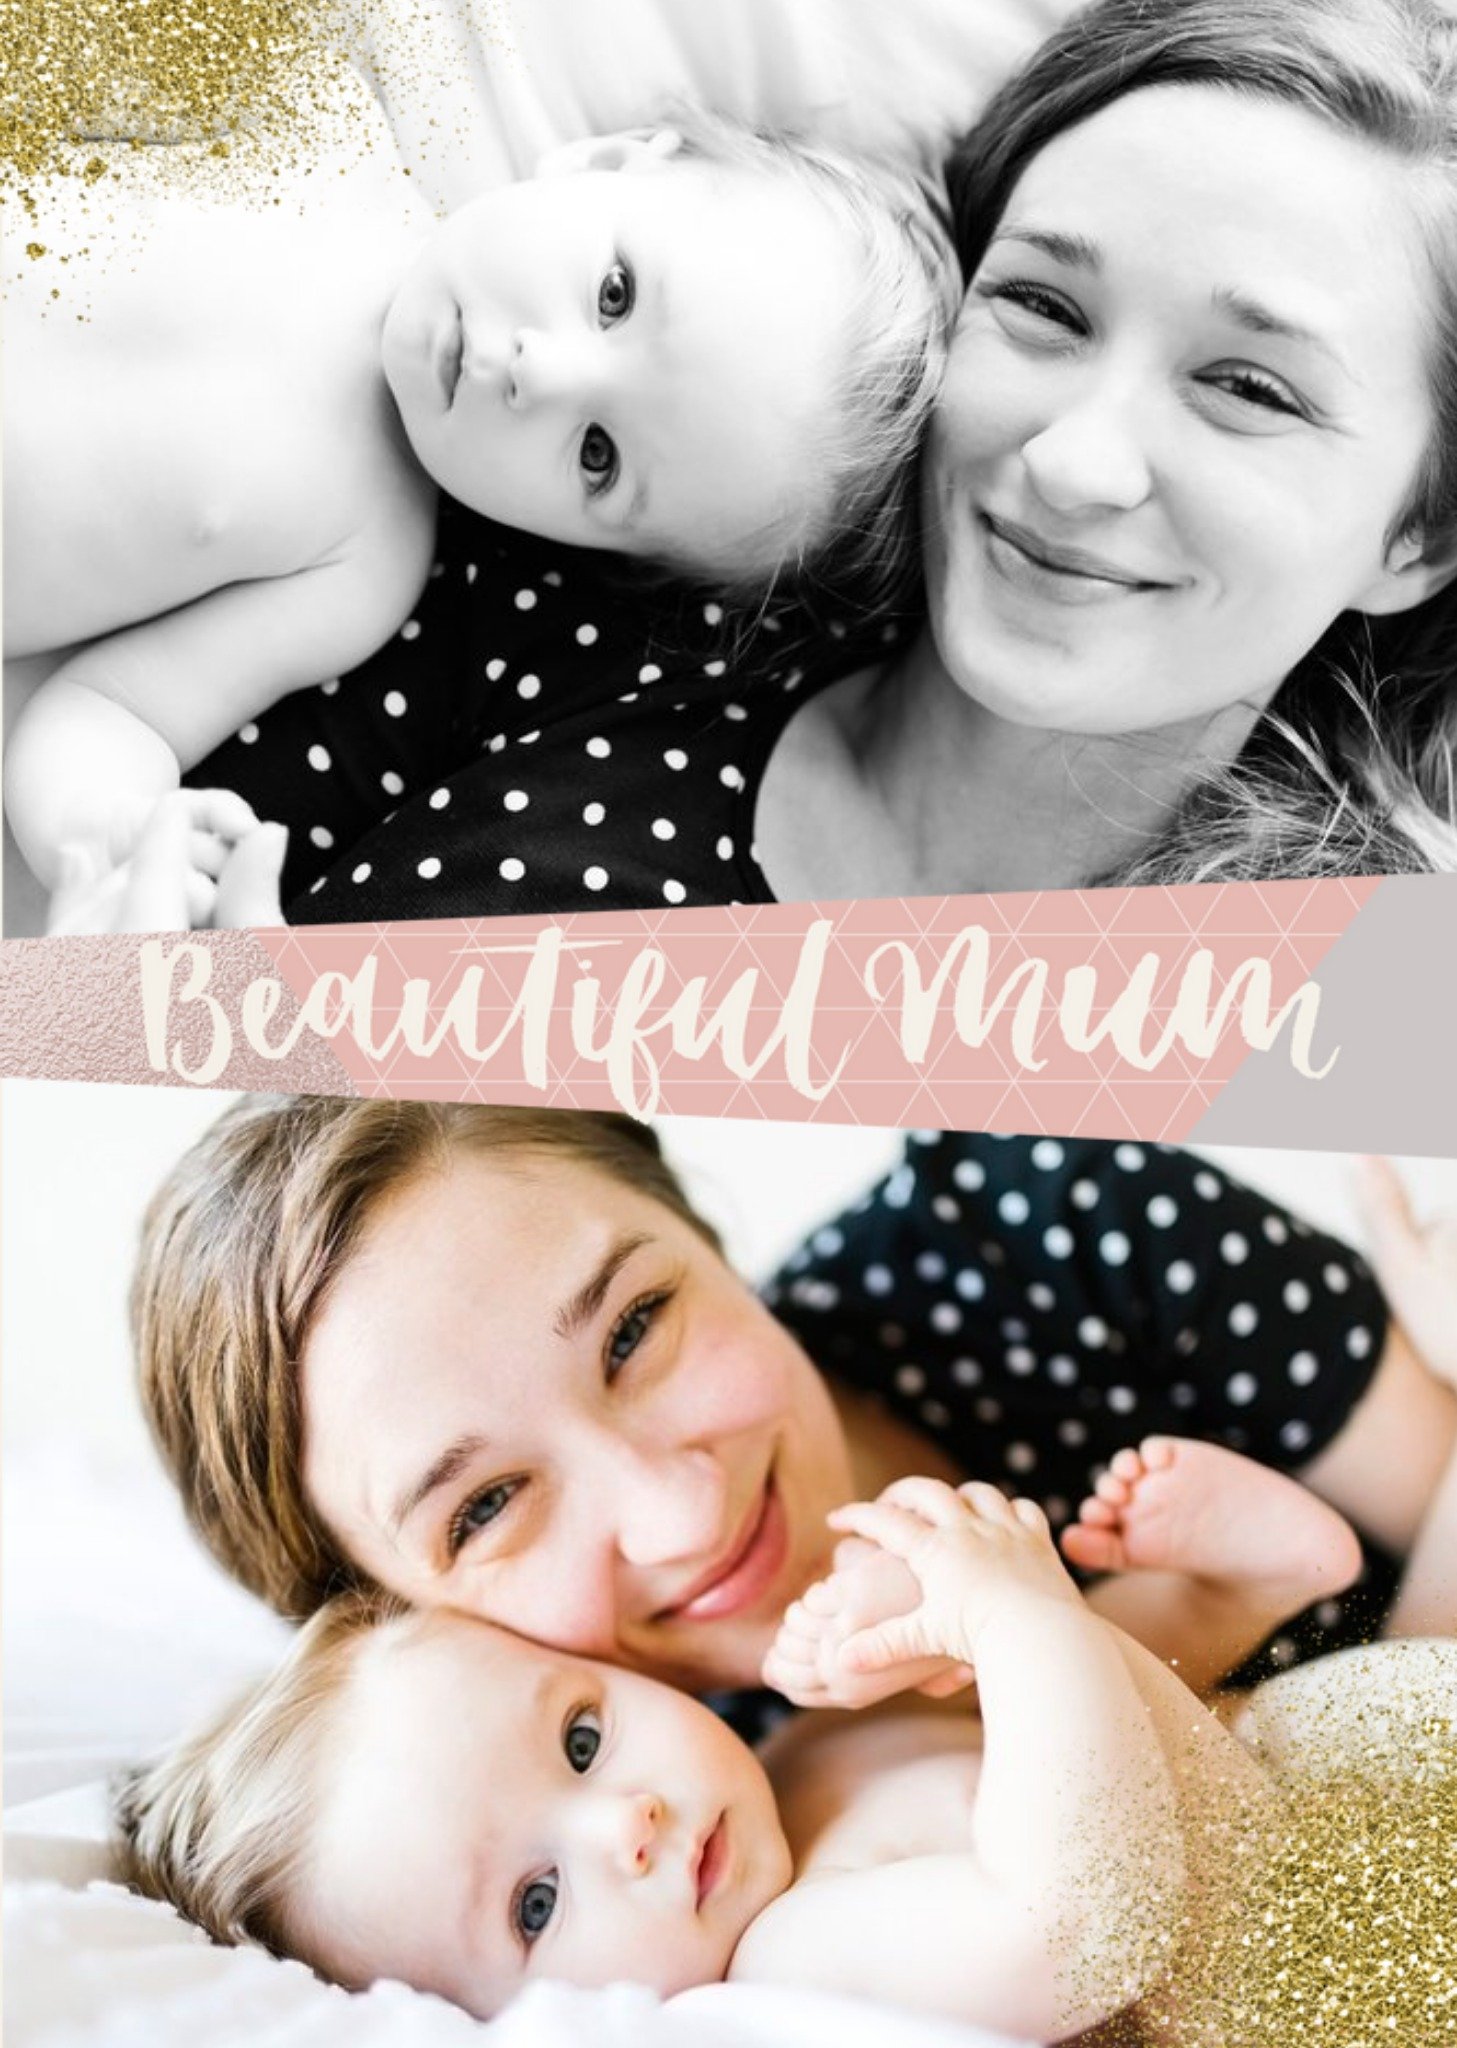 Moonpig Mother's Day Card - Beautiful Mum - Photo Upload Card - 2 Photos Ecard